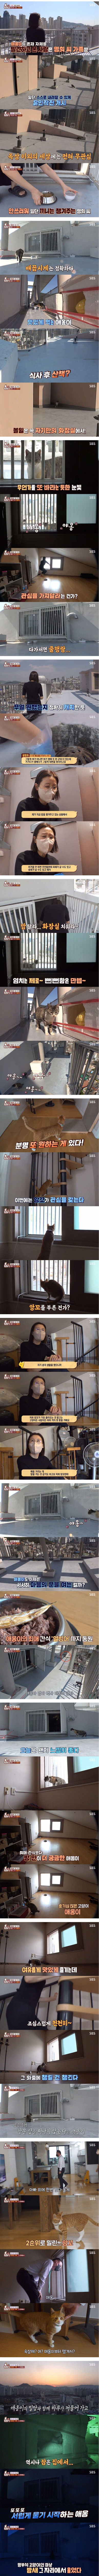 22층 아파트 옥상에 사는 고양이 (스압)